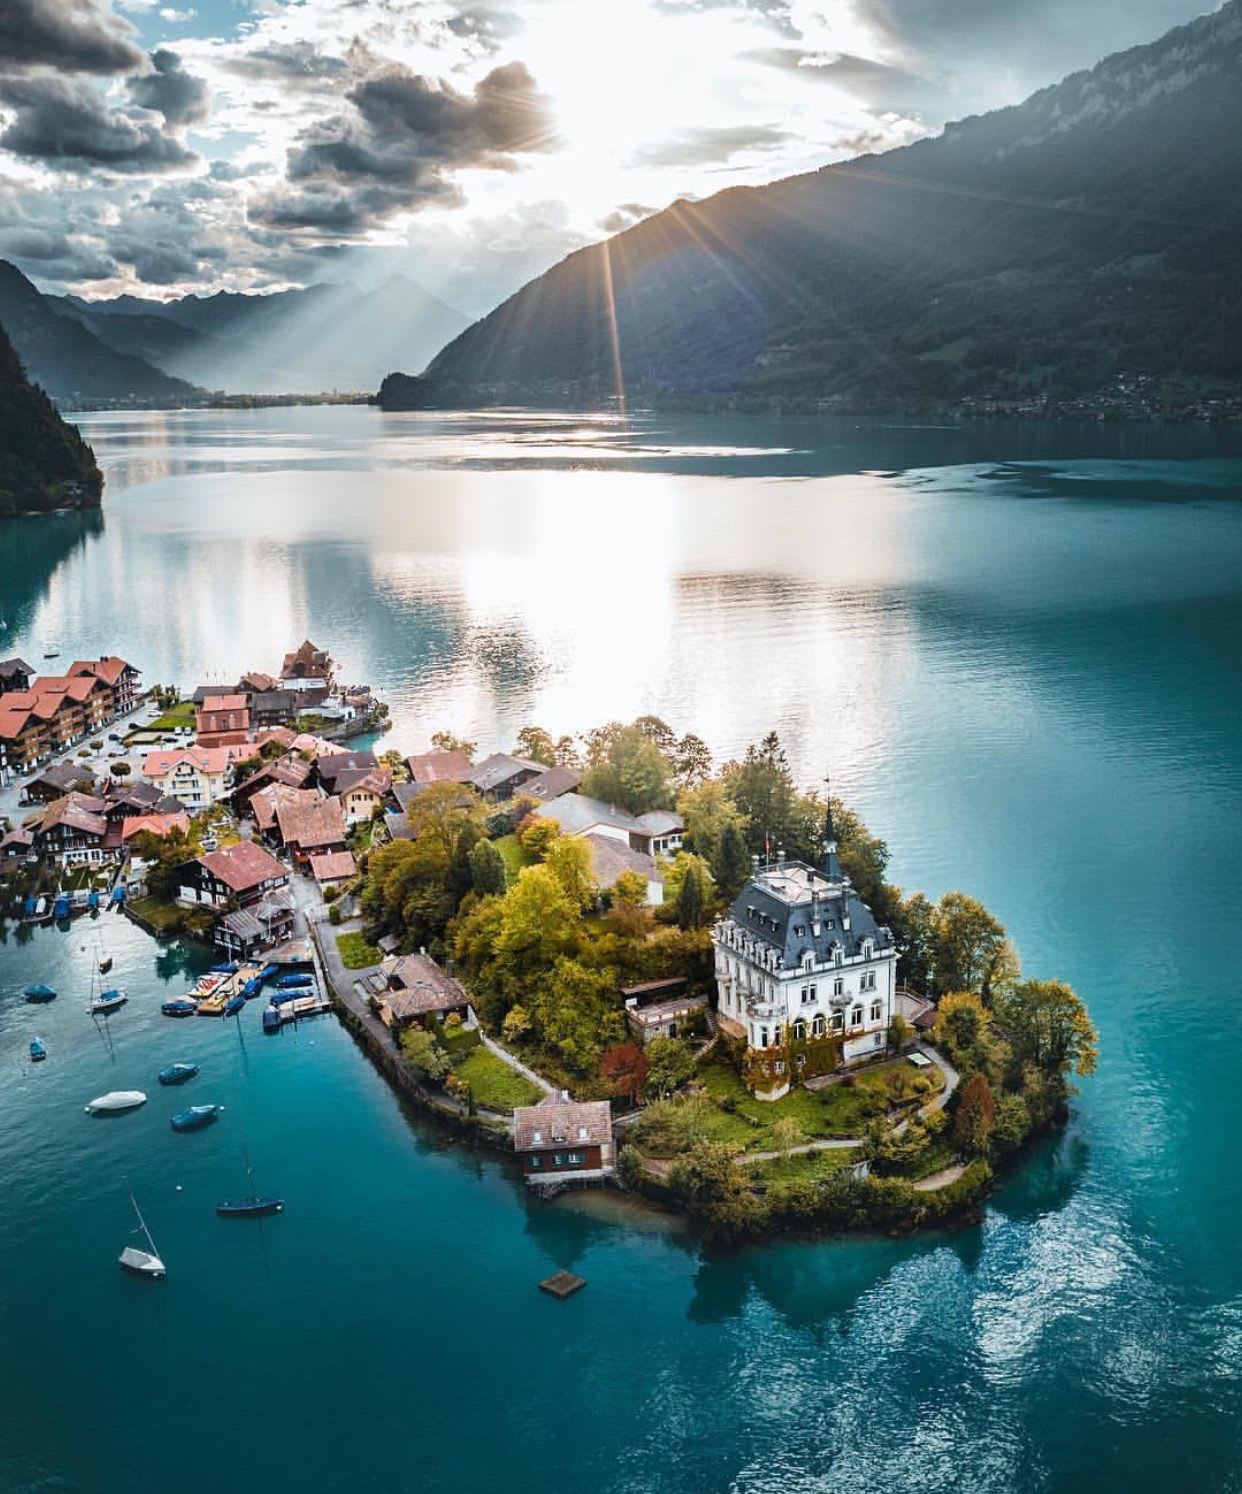 Lake Brienz, Iseltwald, Switzerland, photo by Juerg Hostettler